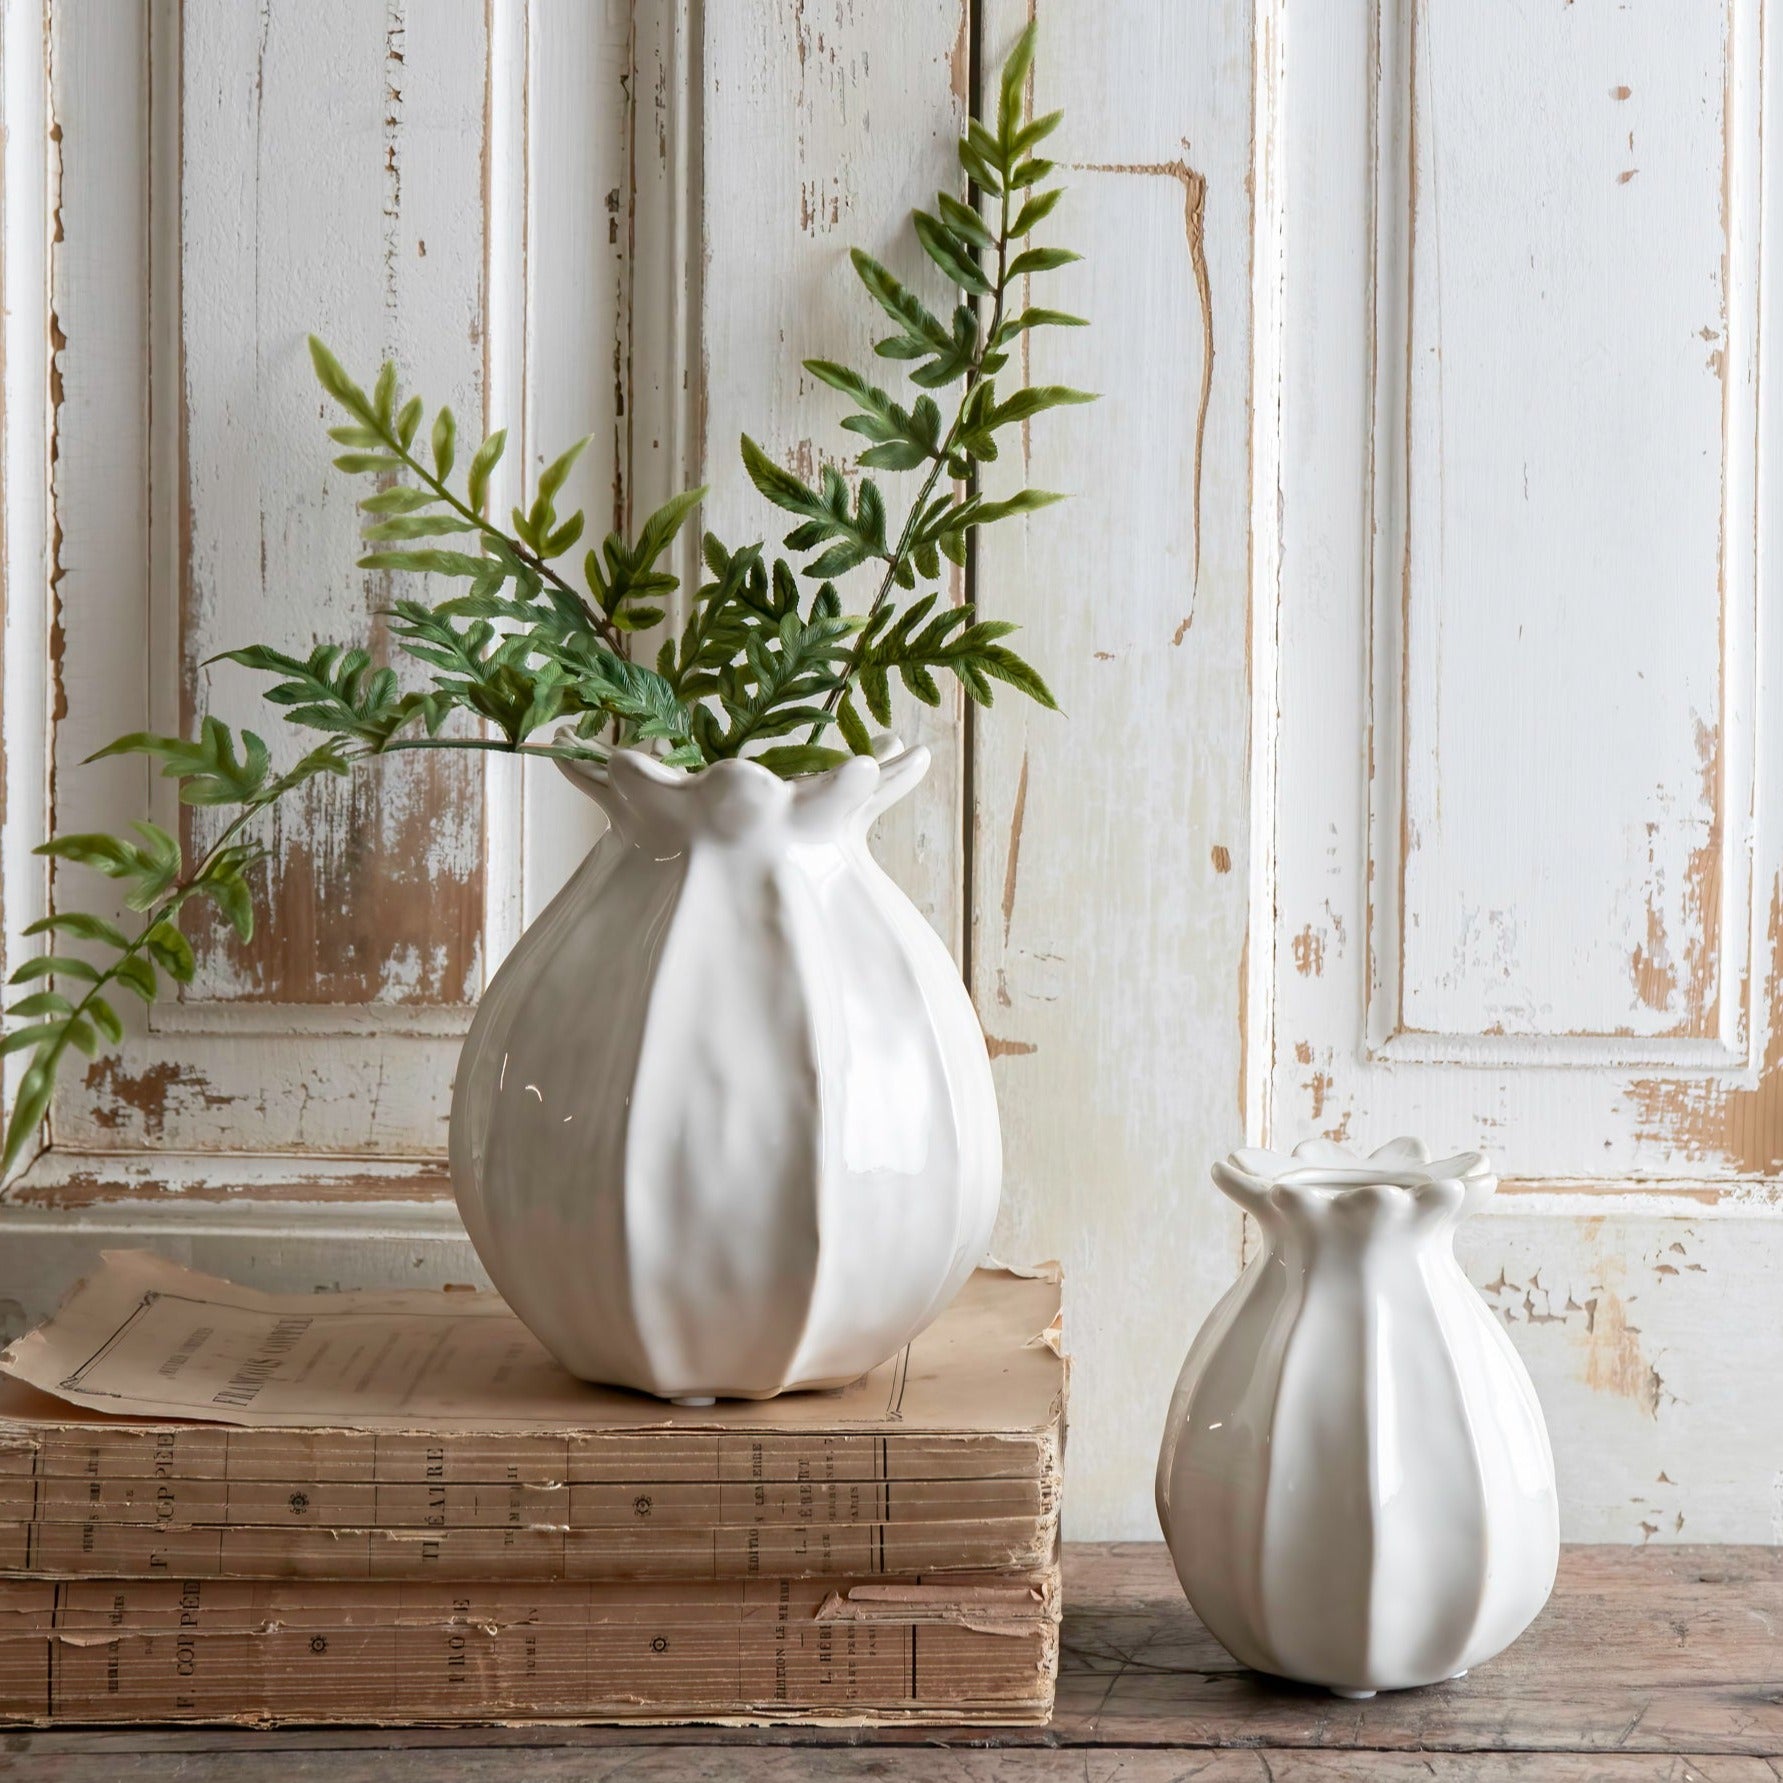 Lilian Poppy Head vase - 2 sizes